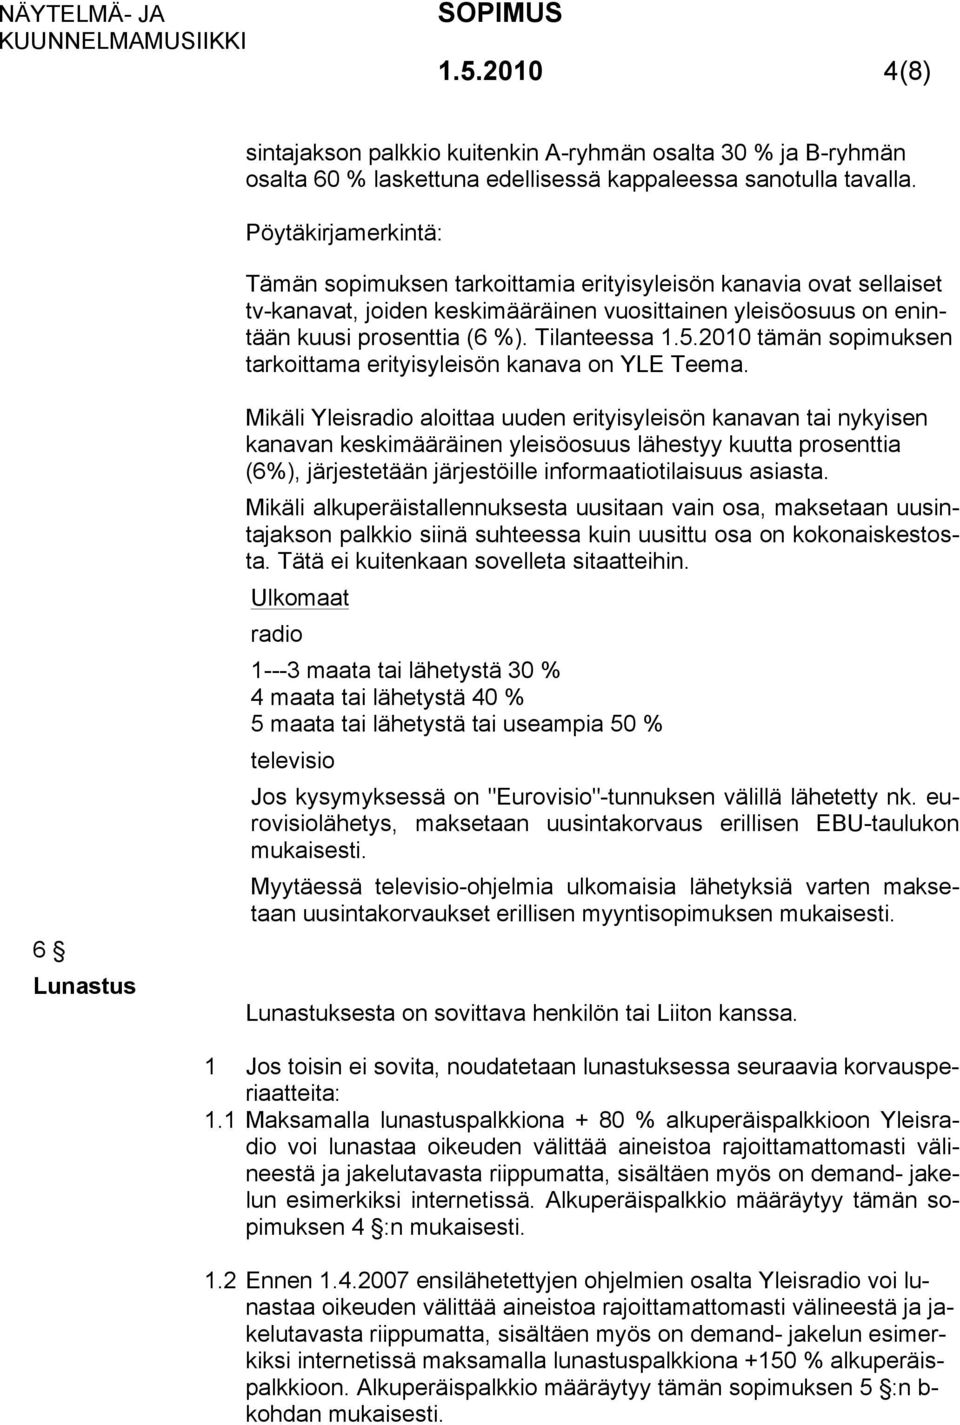 2010 tämän sopimuksen tarkoittama erityisyleisön kanava on YLE Teema.